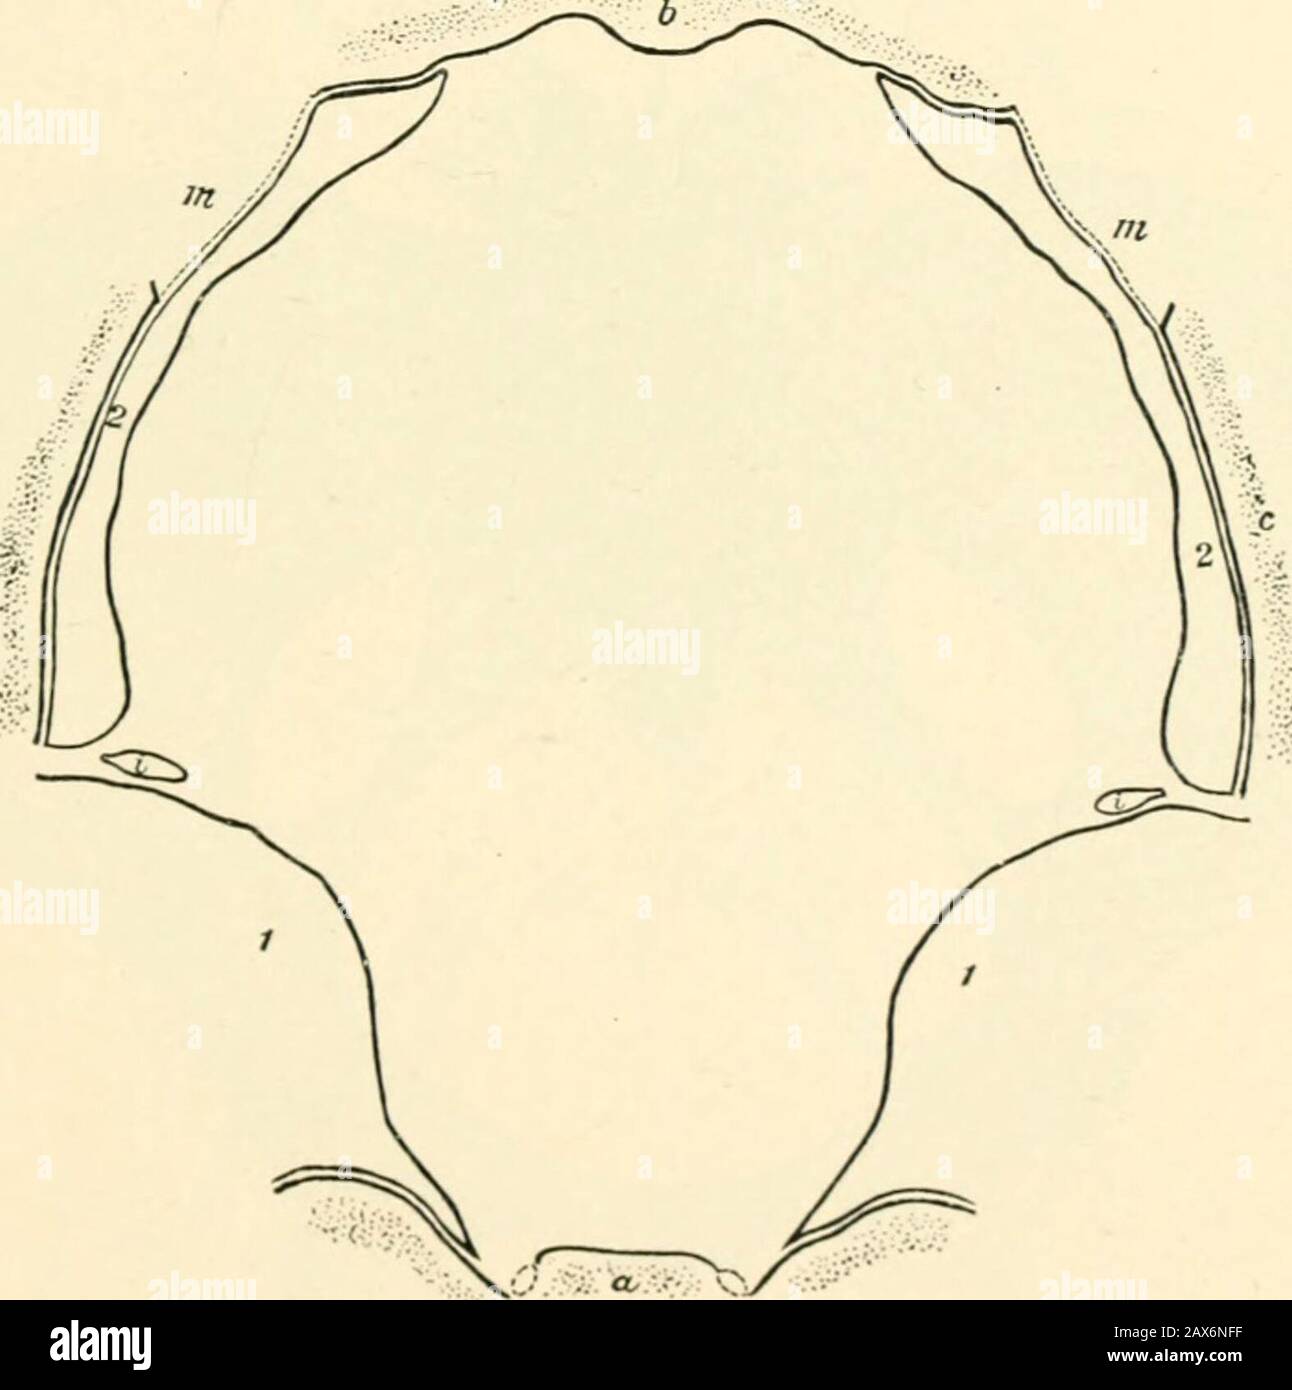 Un libro di testo di ostetricia . Fig. Rappresentazione schematica dello stretto superiore: A, Promontorio;b, sinfisi; i, 1, muscoli iliopsoas; 2, 2, rettus abdominis; linea tratteggiata, entrata pelvica (Yeit). Fig. 13.- il piano di espansione pelvica: A, Sacrum; / pubis; r, parete lateralpelvica; i, 1. Piriformis; 2, 2, interim otturatore; mt m, membrana otturatore; 1, /, -1 nervo iatico. 30 GNANCY Foto Stock